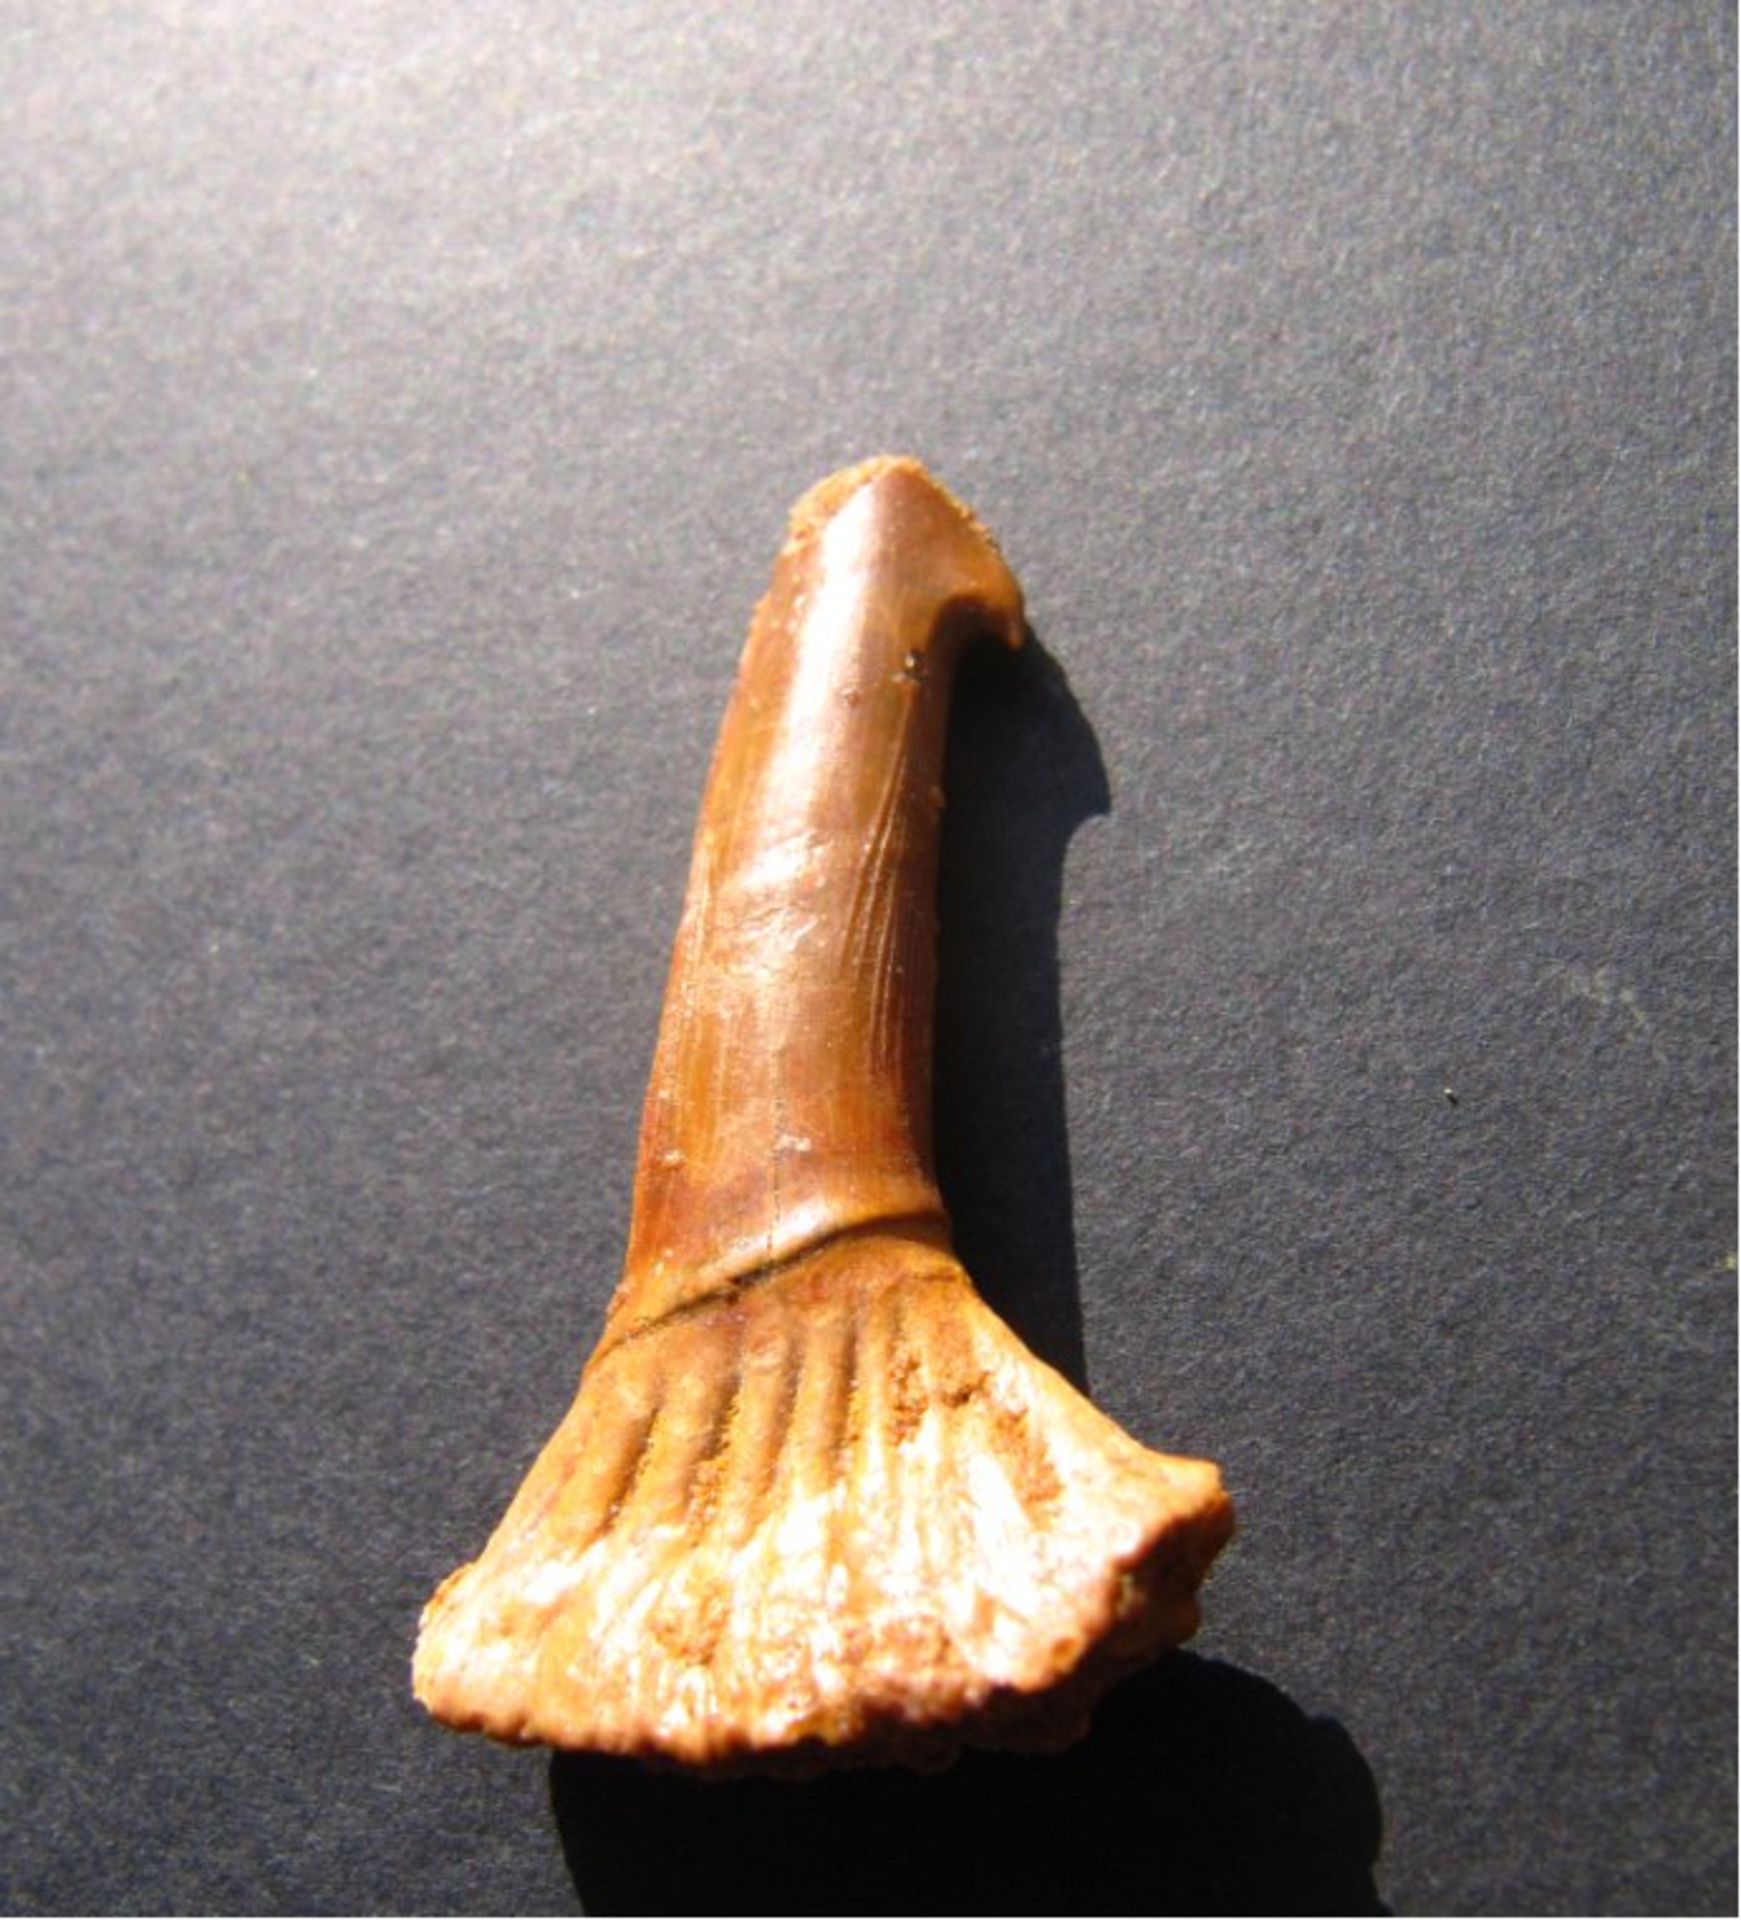 Original versteinerter Sägefisch-ZahnAlter: ca. 100 Mio. Jahre Kreidezeit.Bezeichnung: